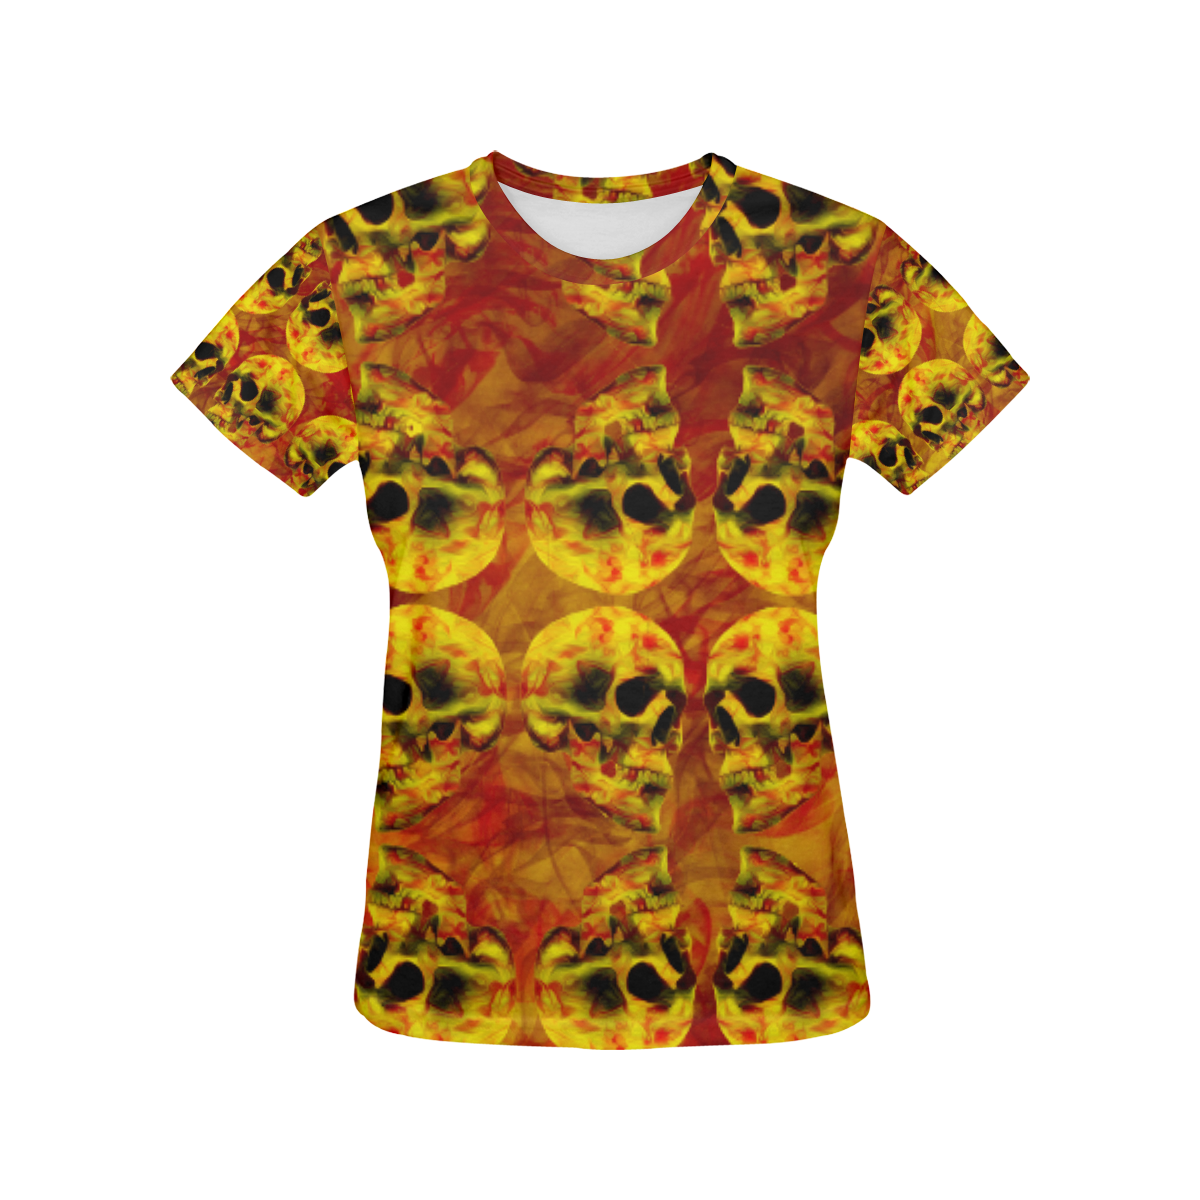 Flaming skull patteren All Over Print T-Shirt for Women (USA Size) (Model T40)